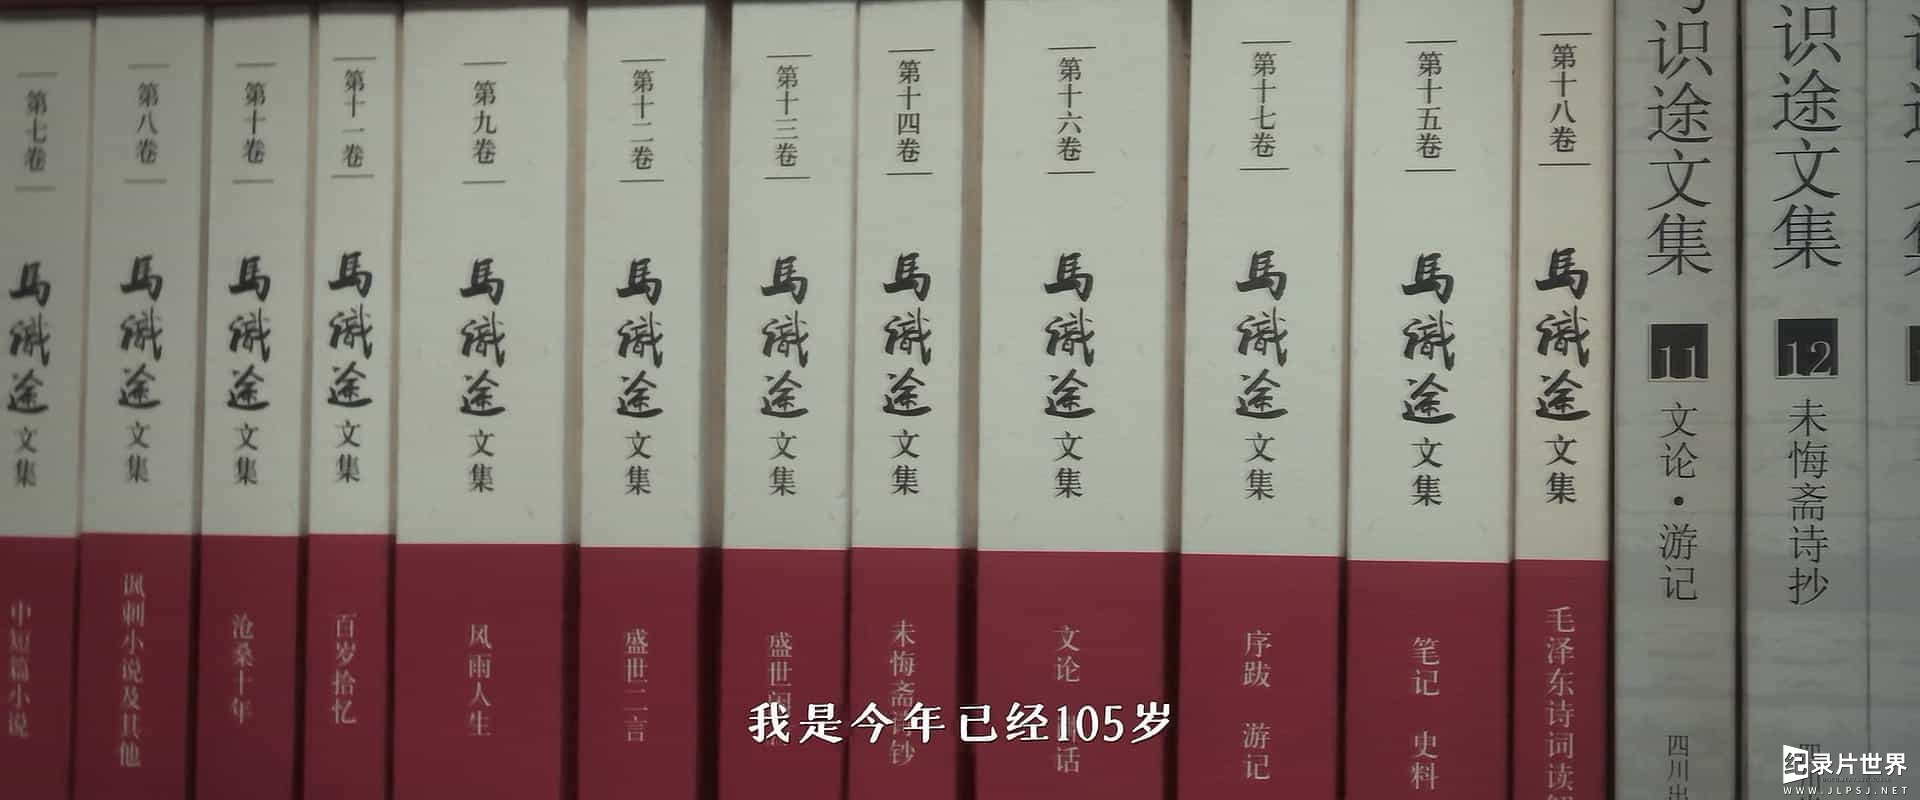 西南联大纪录片《九零后》全1集 